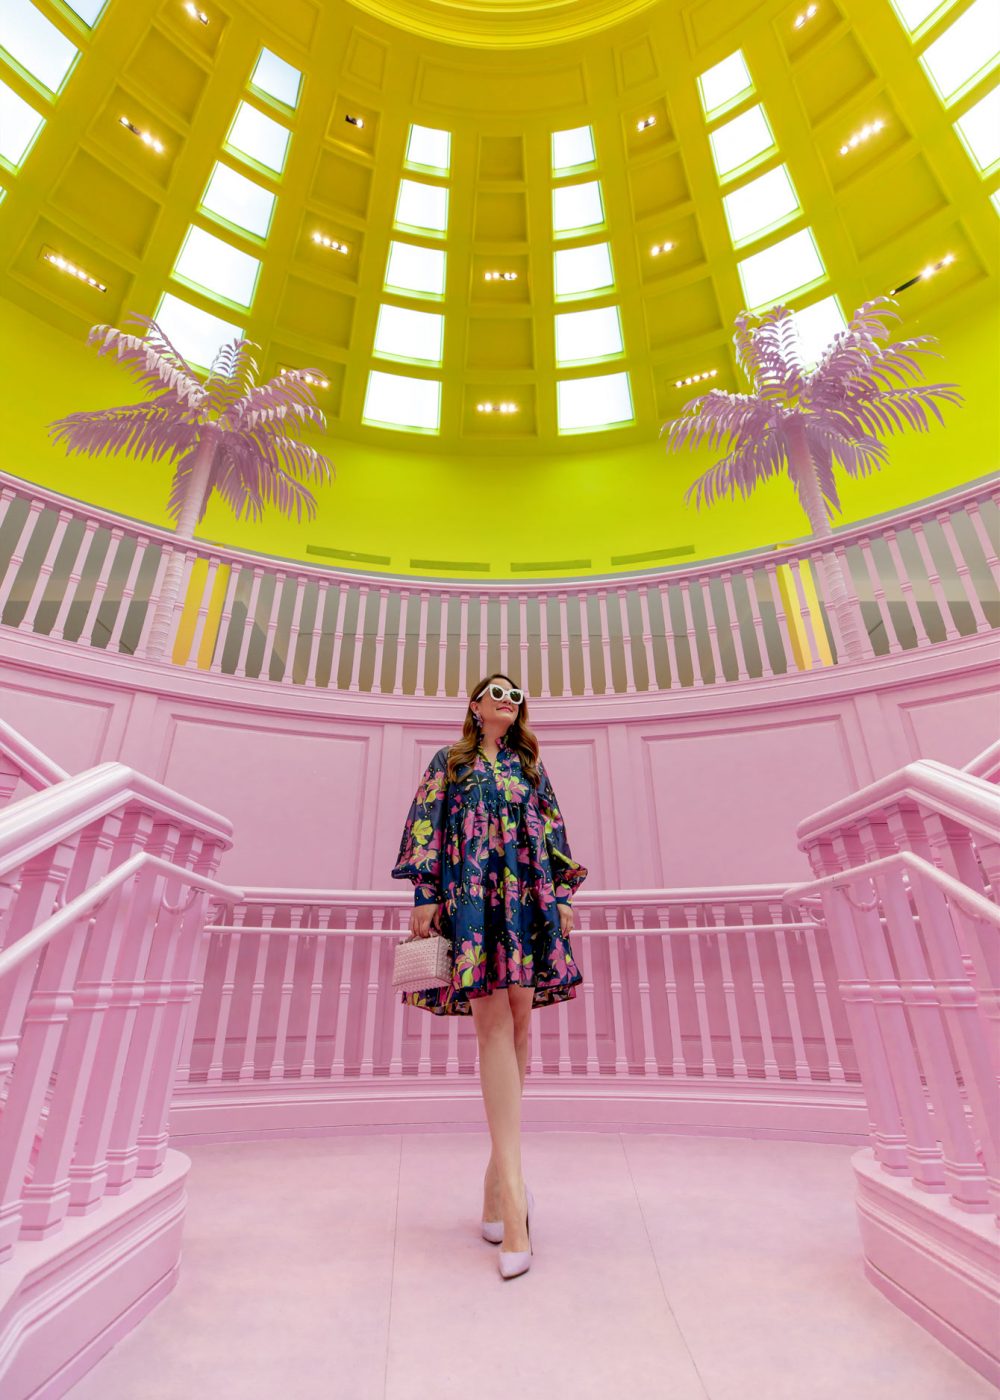 L'exposition Louis Vuitton X à Los Angeles : Plongez dans l'univers créatif  de la mode de luxe